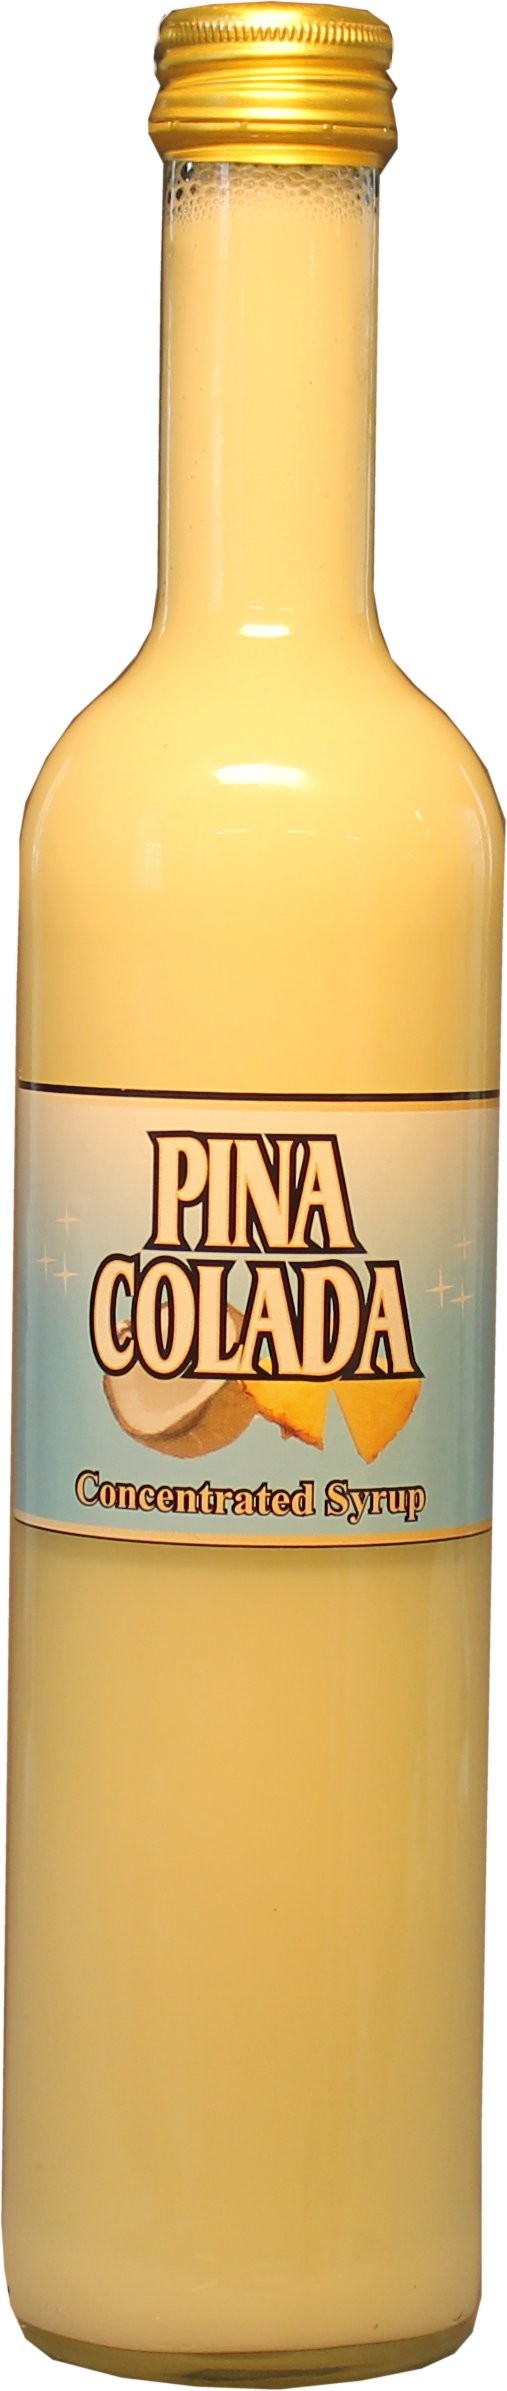 Pina Colada sirap (syrup).